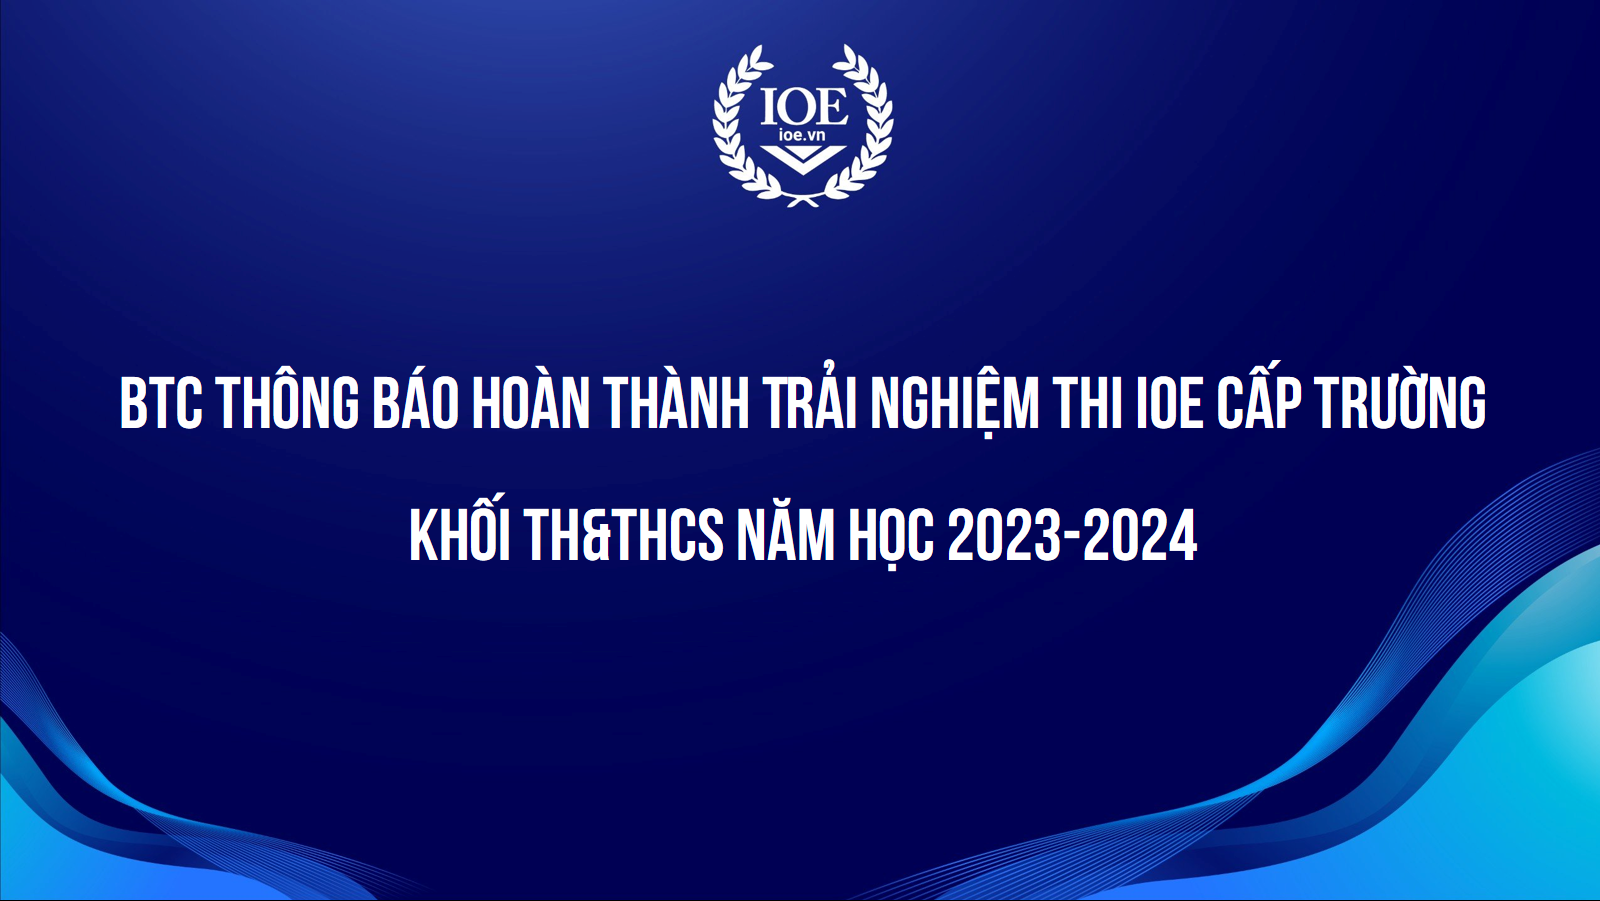 BTC Thông báo hoàn thành Trải nghiệm thi IOE cấp trường khối TH&THCS năm học 2023-2024